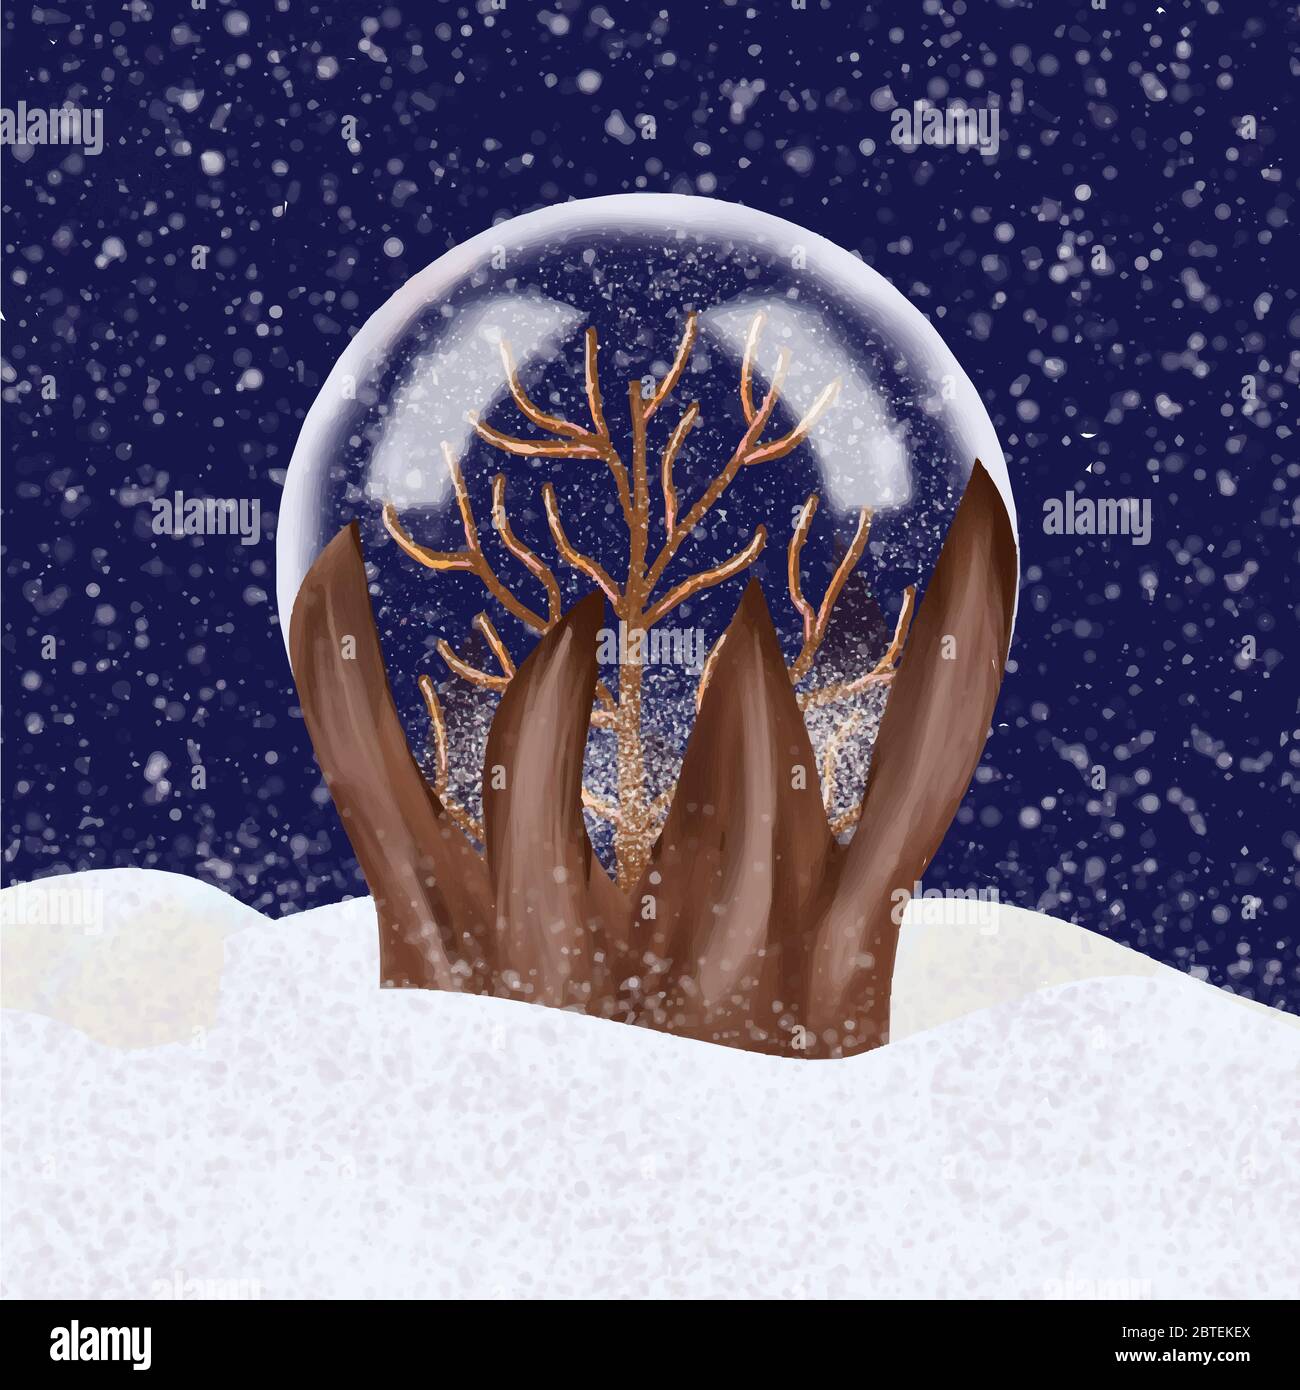 Boule à neige avec arbre d'hiver à l'intérieur. Illustration vectorielle de  stock Image Vectorielle Stock - Alamy